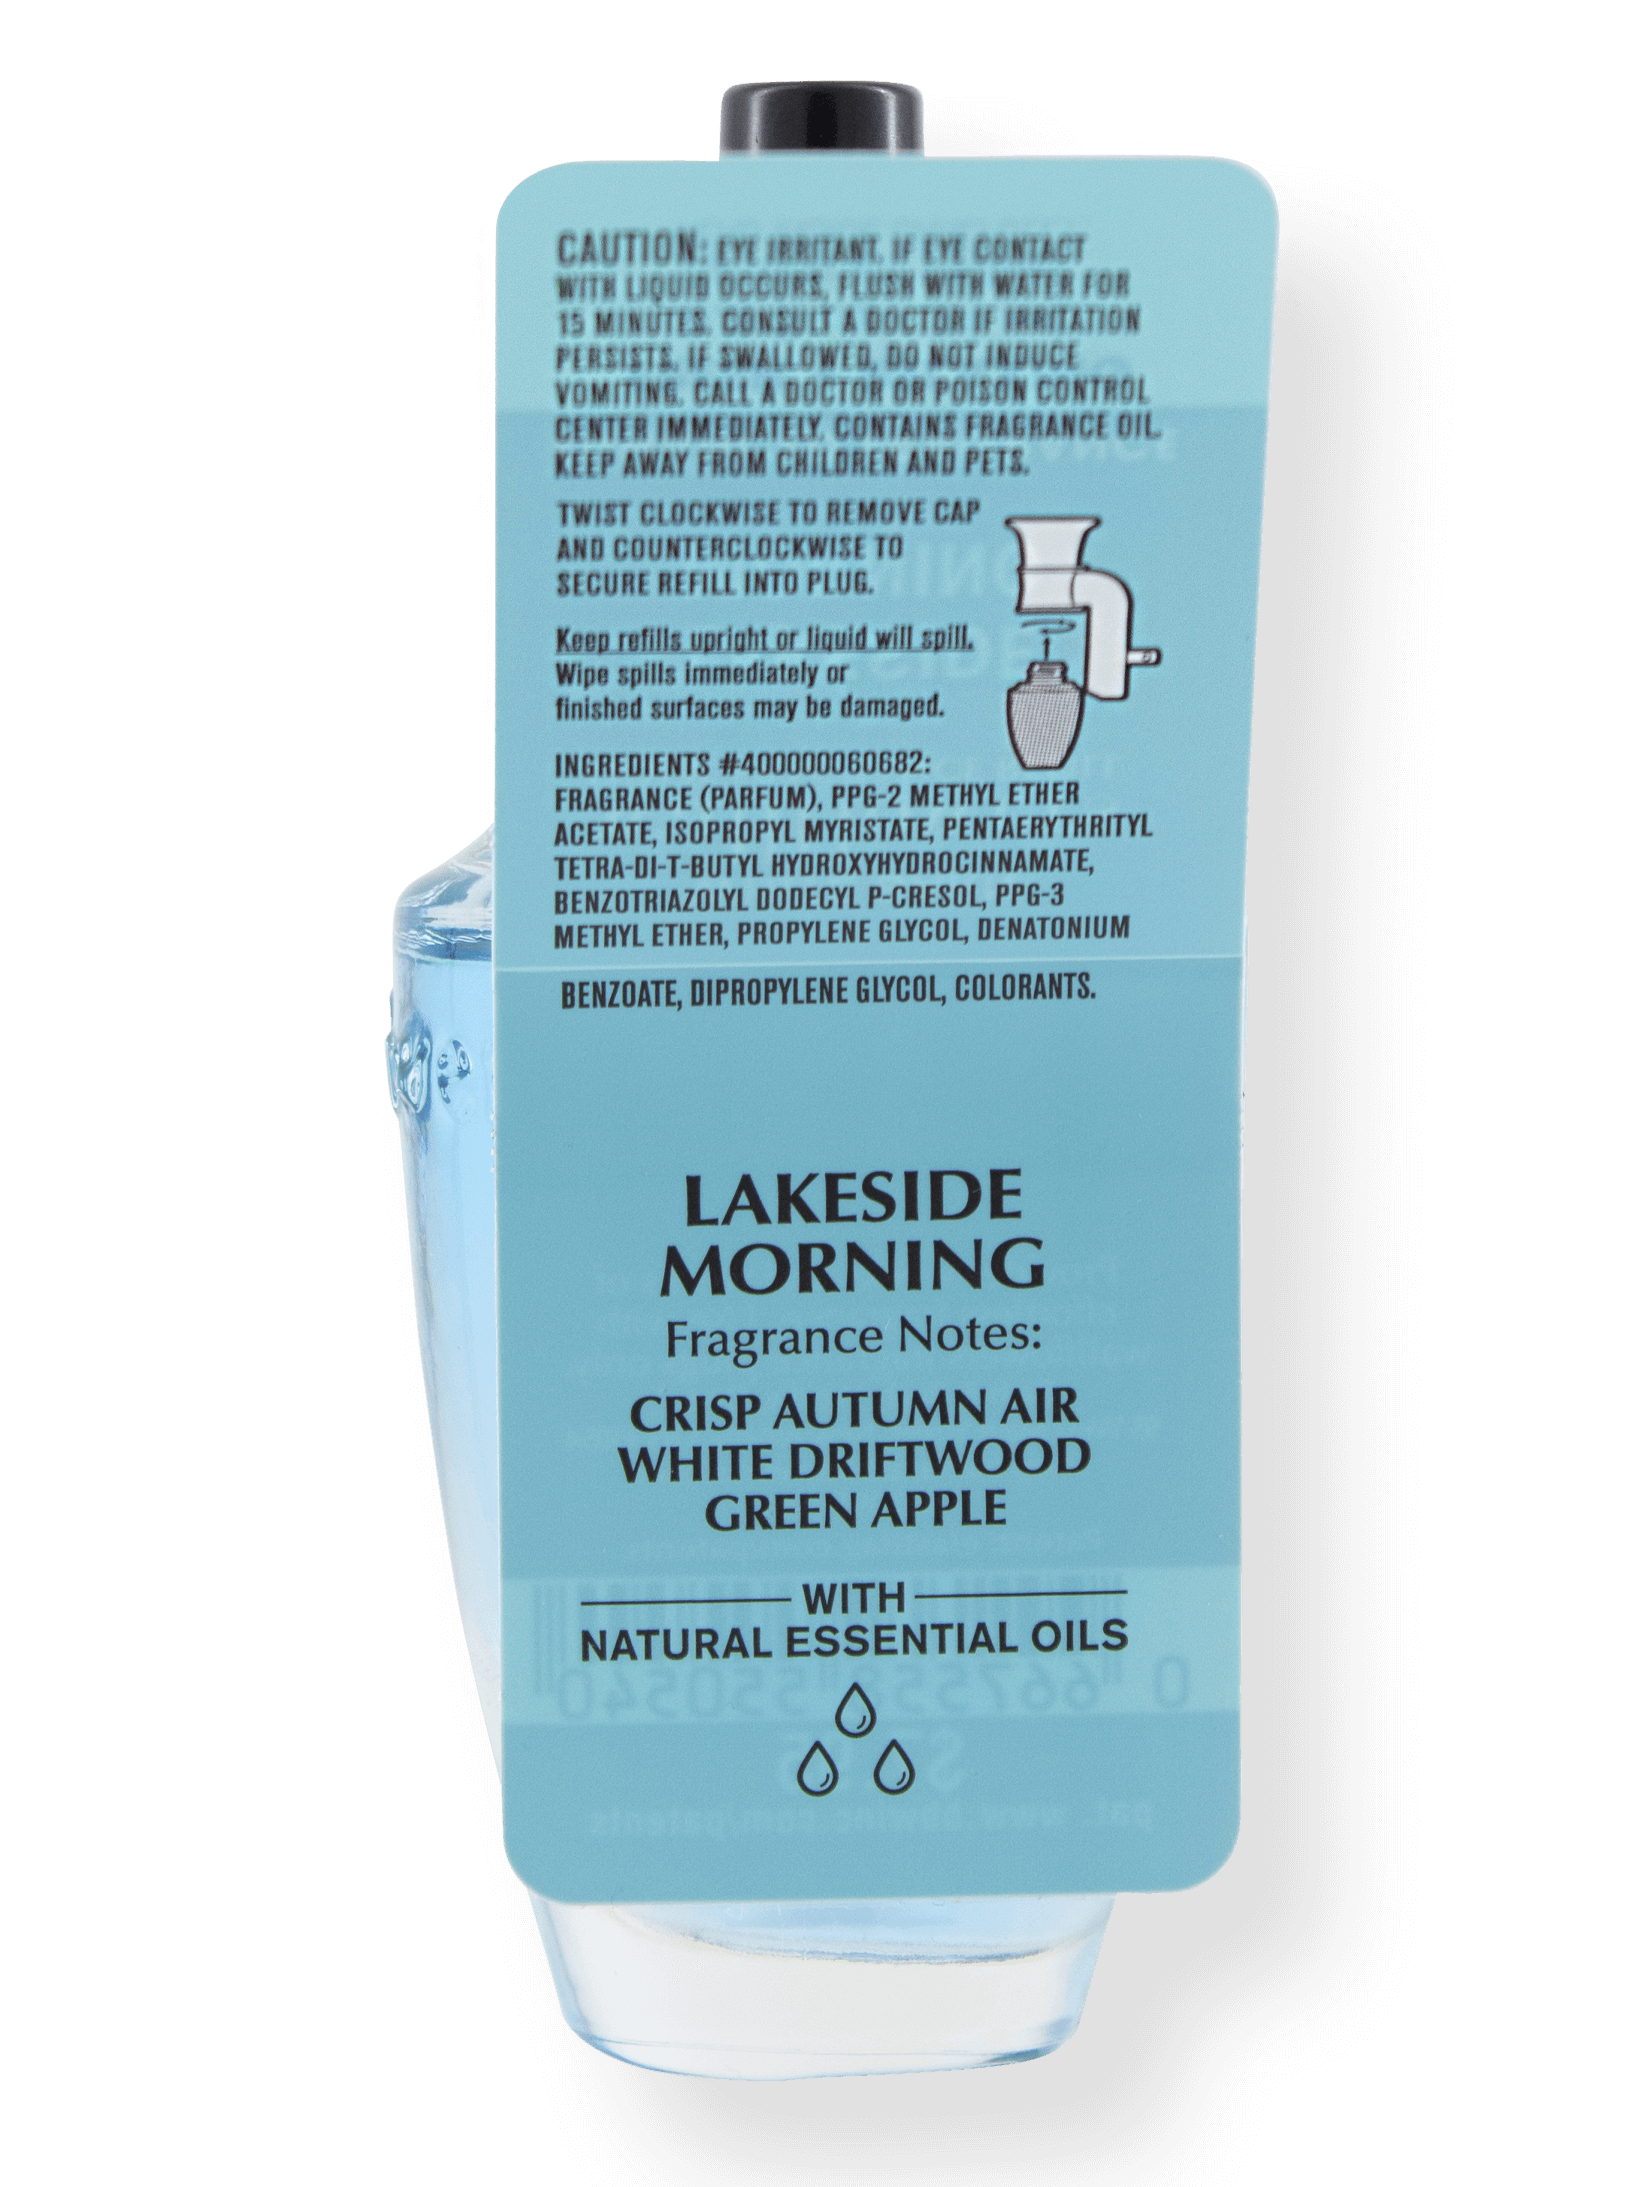 Wallflower Refill - Lakeside Morning - 24ml